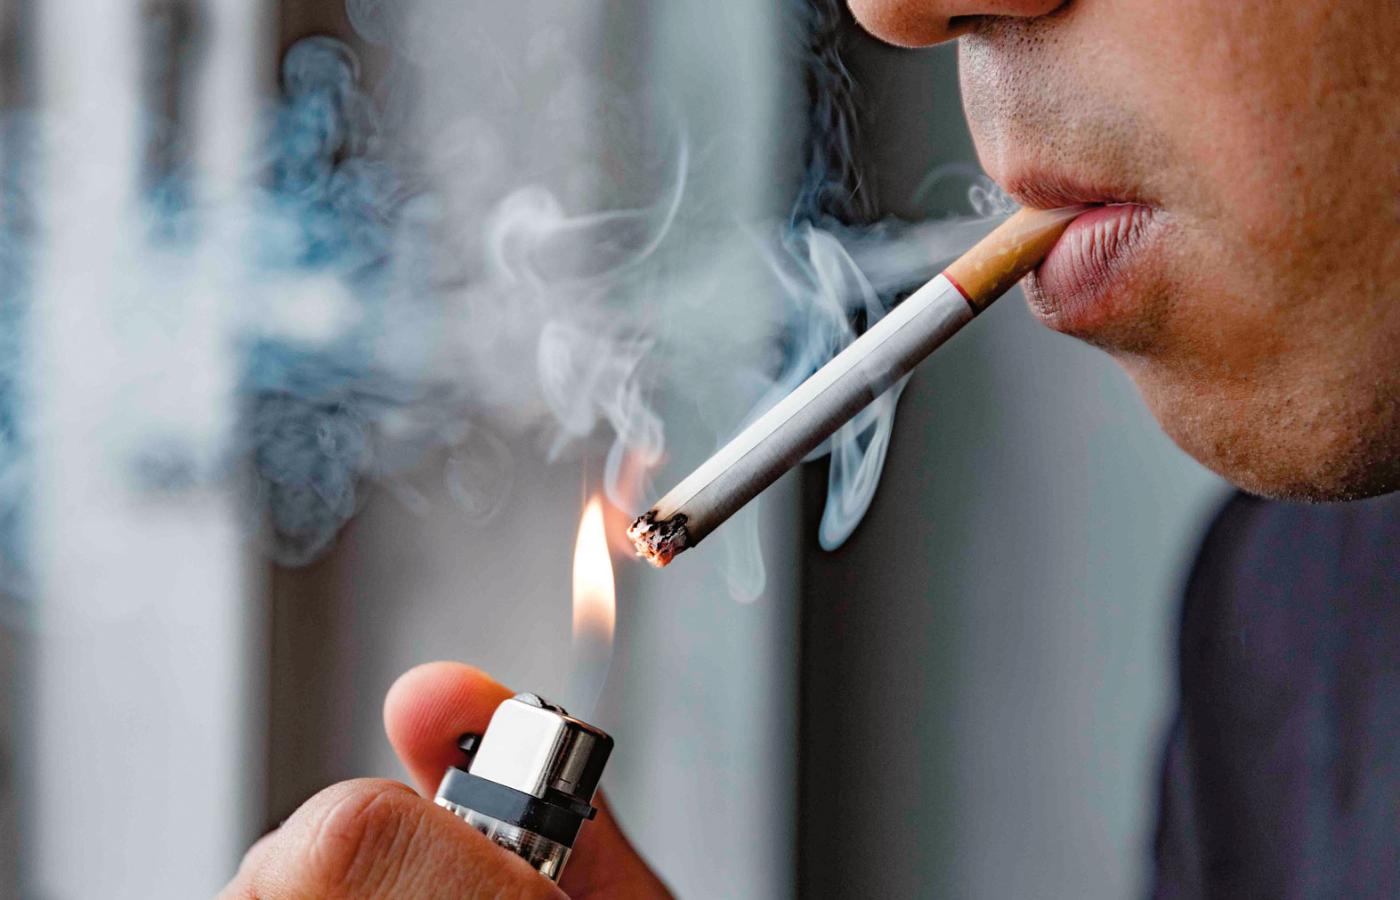 Wiek uprawniający do kupna papierosów w Wielkiej Brytanii (dziś 18 lat) podnoszony byłby co roku o rok, więc „dzisiejsze czternastolatki nigdy legalnie nie mogłyby nabyć papierosów”.